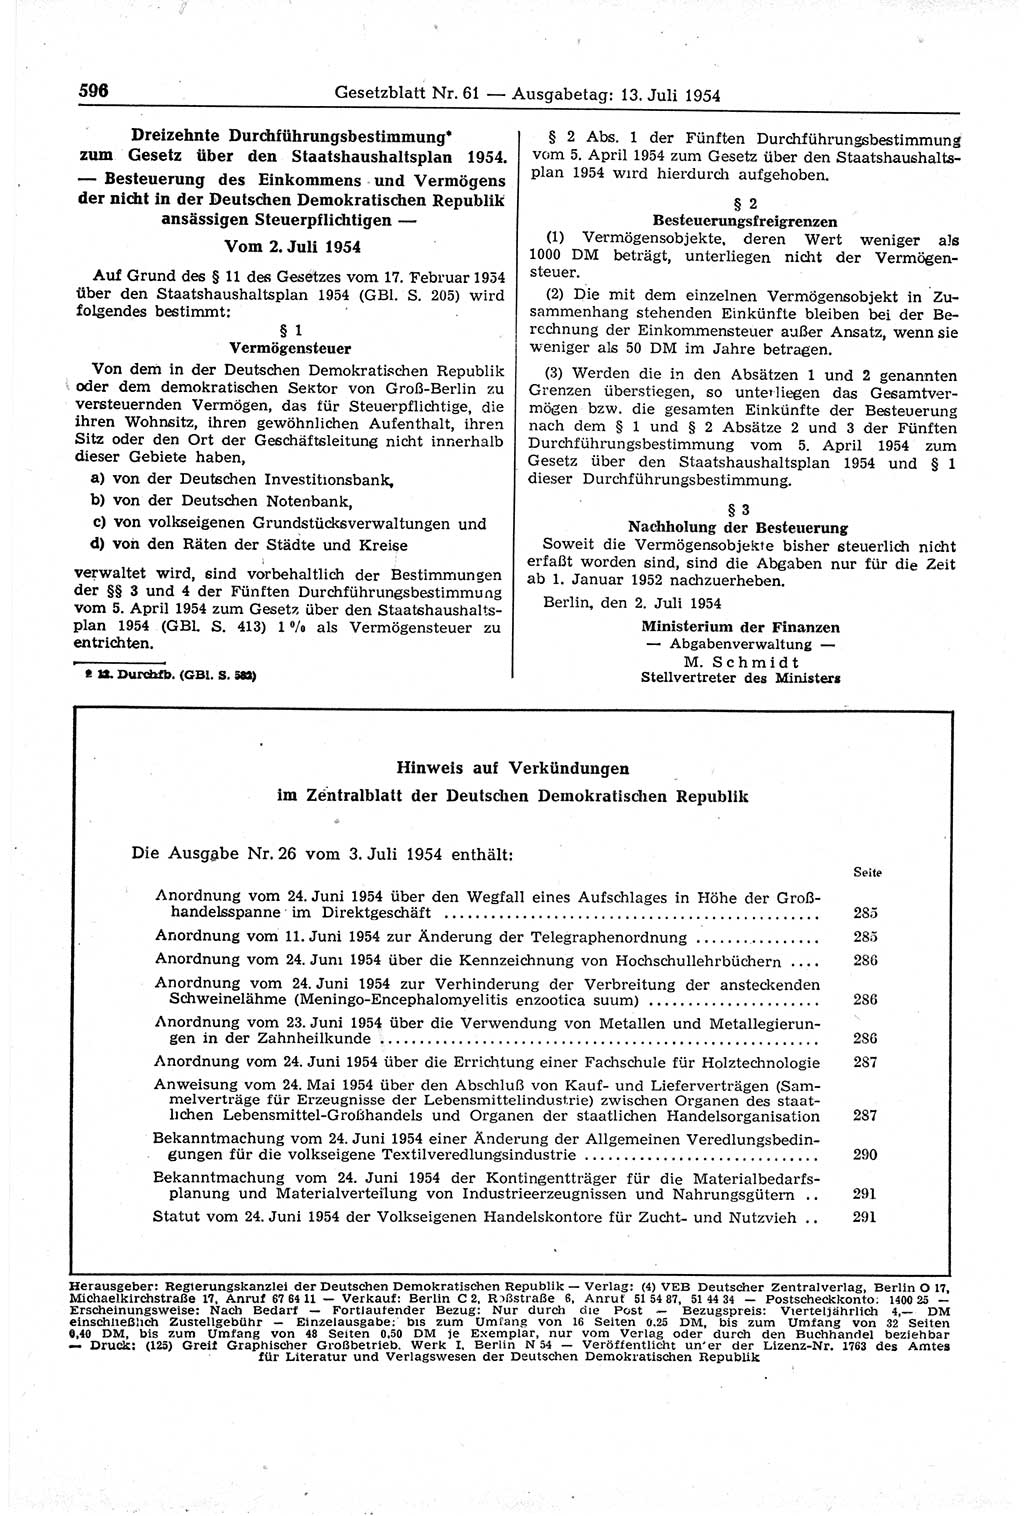 Gesetzblatt (GBl.) der Deutschen Demokratischen Republik (DDR) 1954, Seite 596 (GBl. DDR 1954, S. 596)